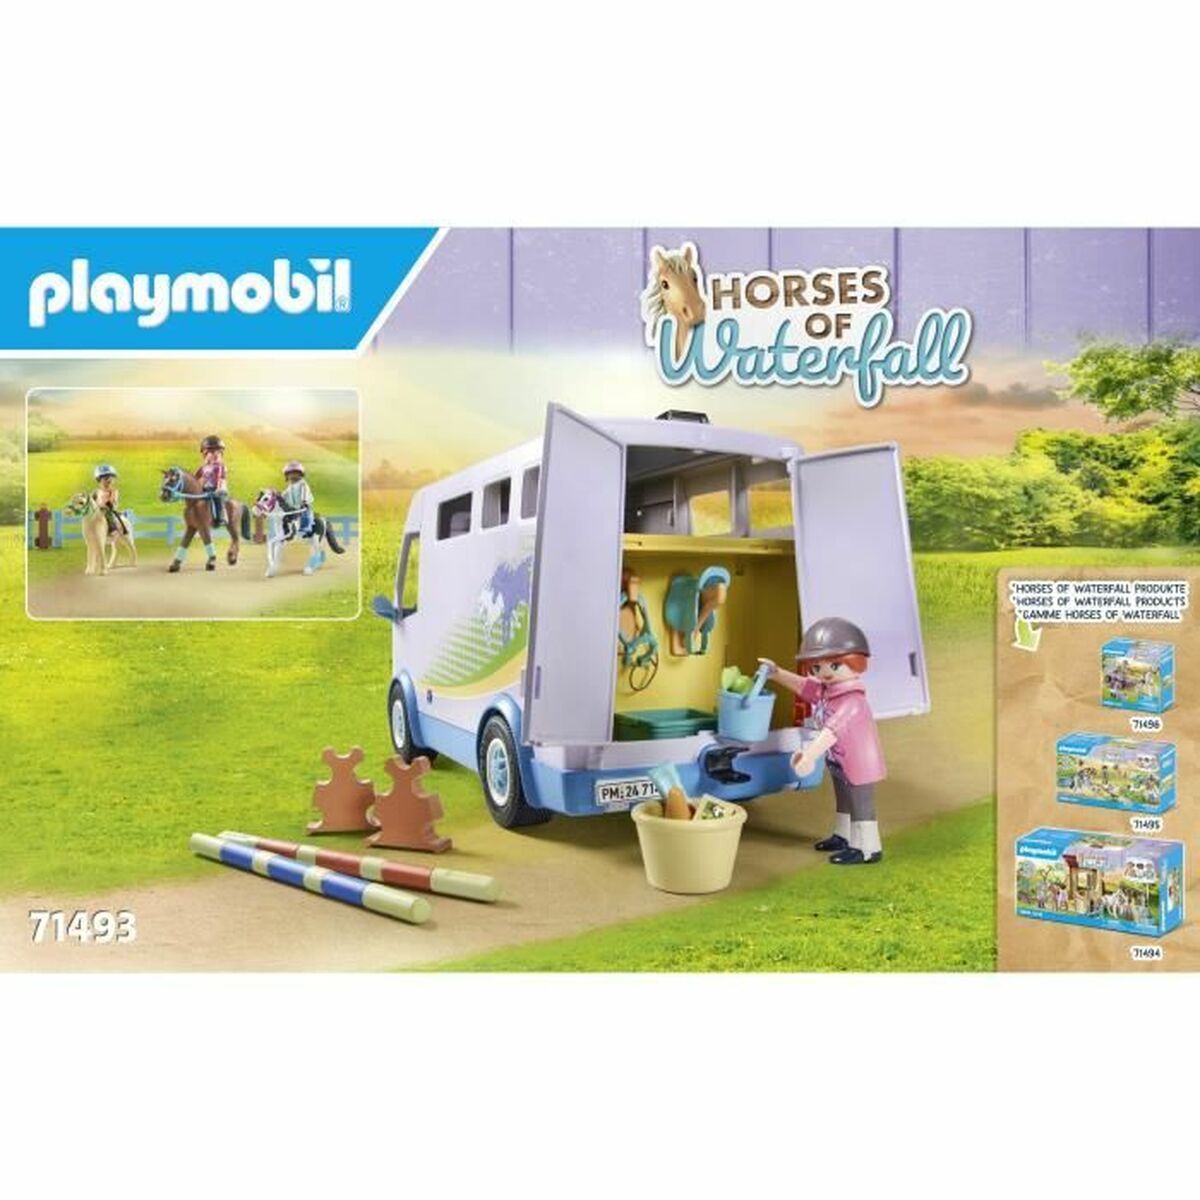 Аксессуары для кукольного домика Playmobil